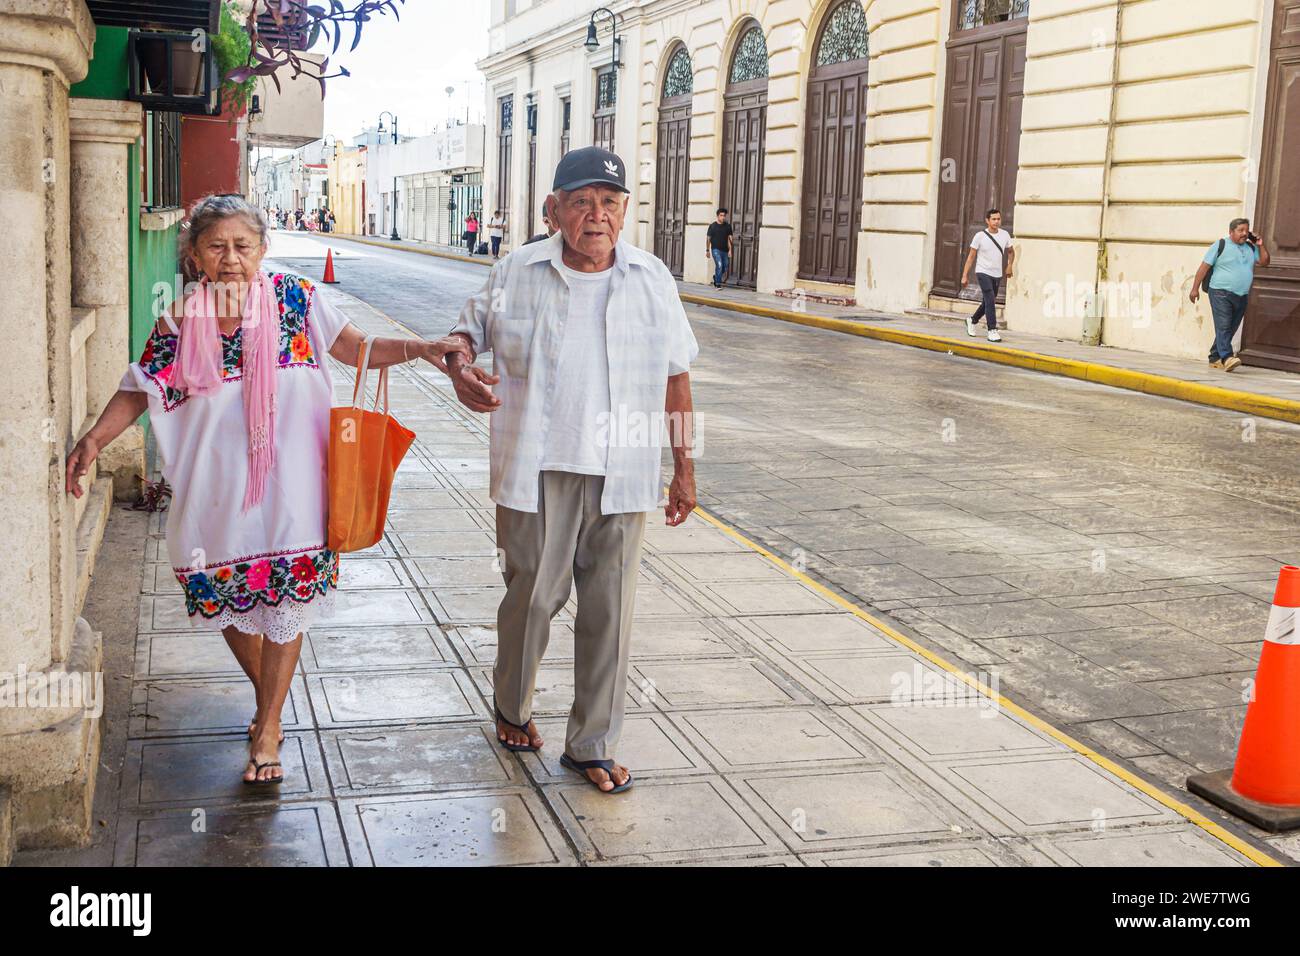 Merida Mexico,centro historico central historic district,senior citizen pensioner,retired retirement,old older elder elderly,seniors citizens pensione Stock Photo